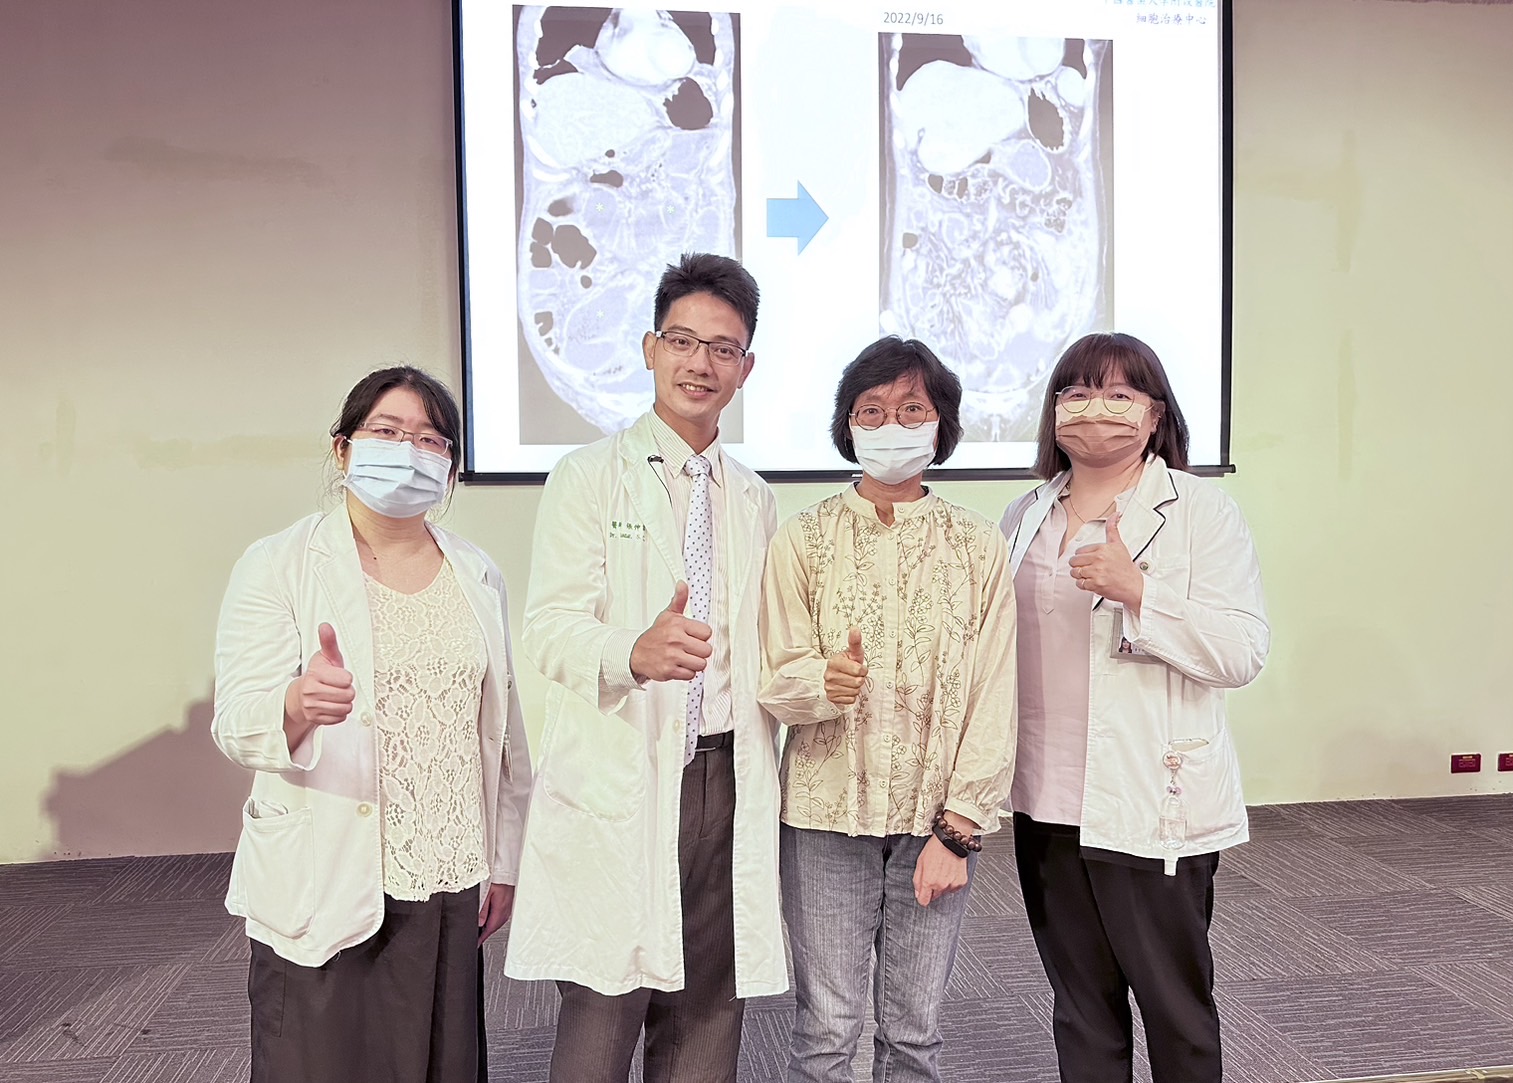 中國醫藥大學附設醫院的腹膜腫瘤治療中心的張伸吉主任(右二) 與其團隊和目前康復狀態良好的病人林小姐(左二)